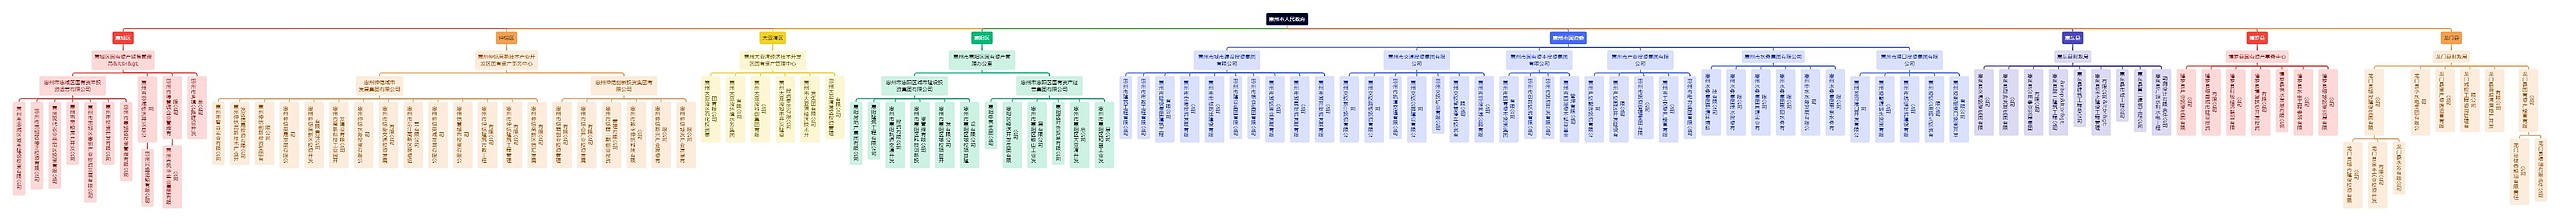 惠州市人民政府组织架构图